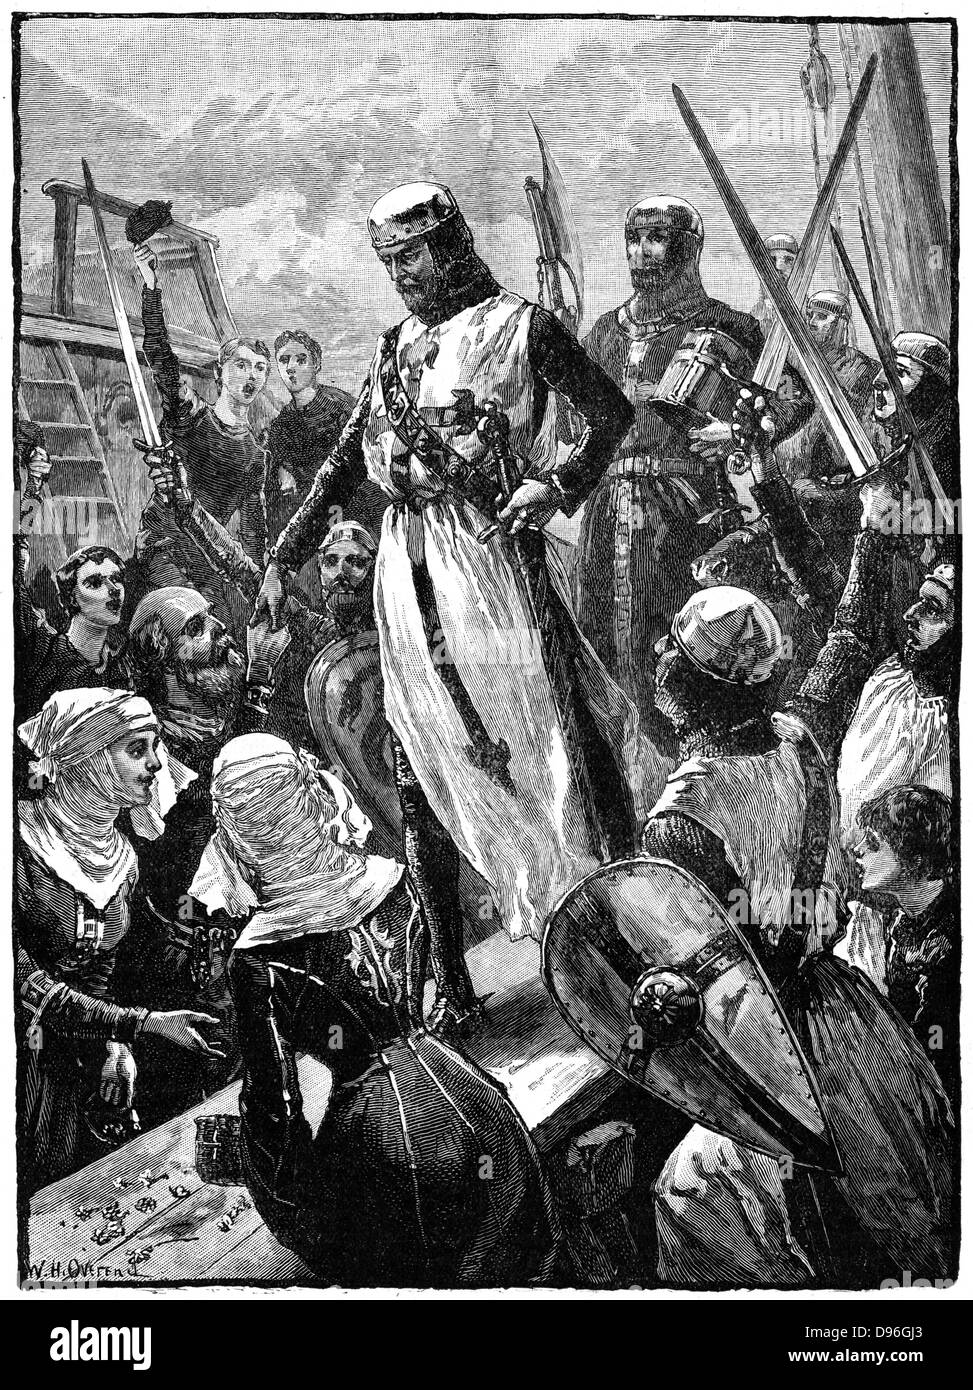 Richard I, Coeur de Lion, (1157-1199) Landung in Sandwich, Kent, 14. März 1194. Richard, der Sohn von Heinrich II. und Eleonore von Aquitanien, und zweitens (Anjou Plantagenêt) König von England (1189-1199). Auf seinem Weg nach Hause vom Dritten Kreuzzug (1189-1192) war er Schiffbruch und begann seinen Weg über Europa in der Verkleidung zu machen. Er wurde erkannt und als Geisel gehalten durch Kaiser Heinrich VI. England bezahlt das Lösegeld und Richard wurde freigegeben. Holzstich c 1880. Stockfoto